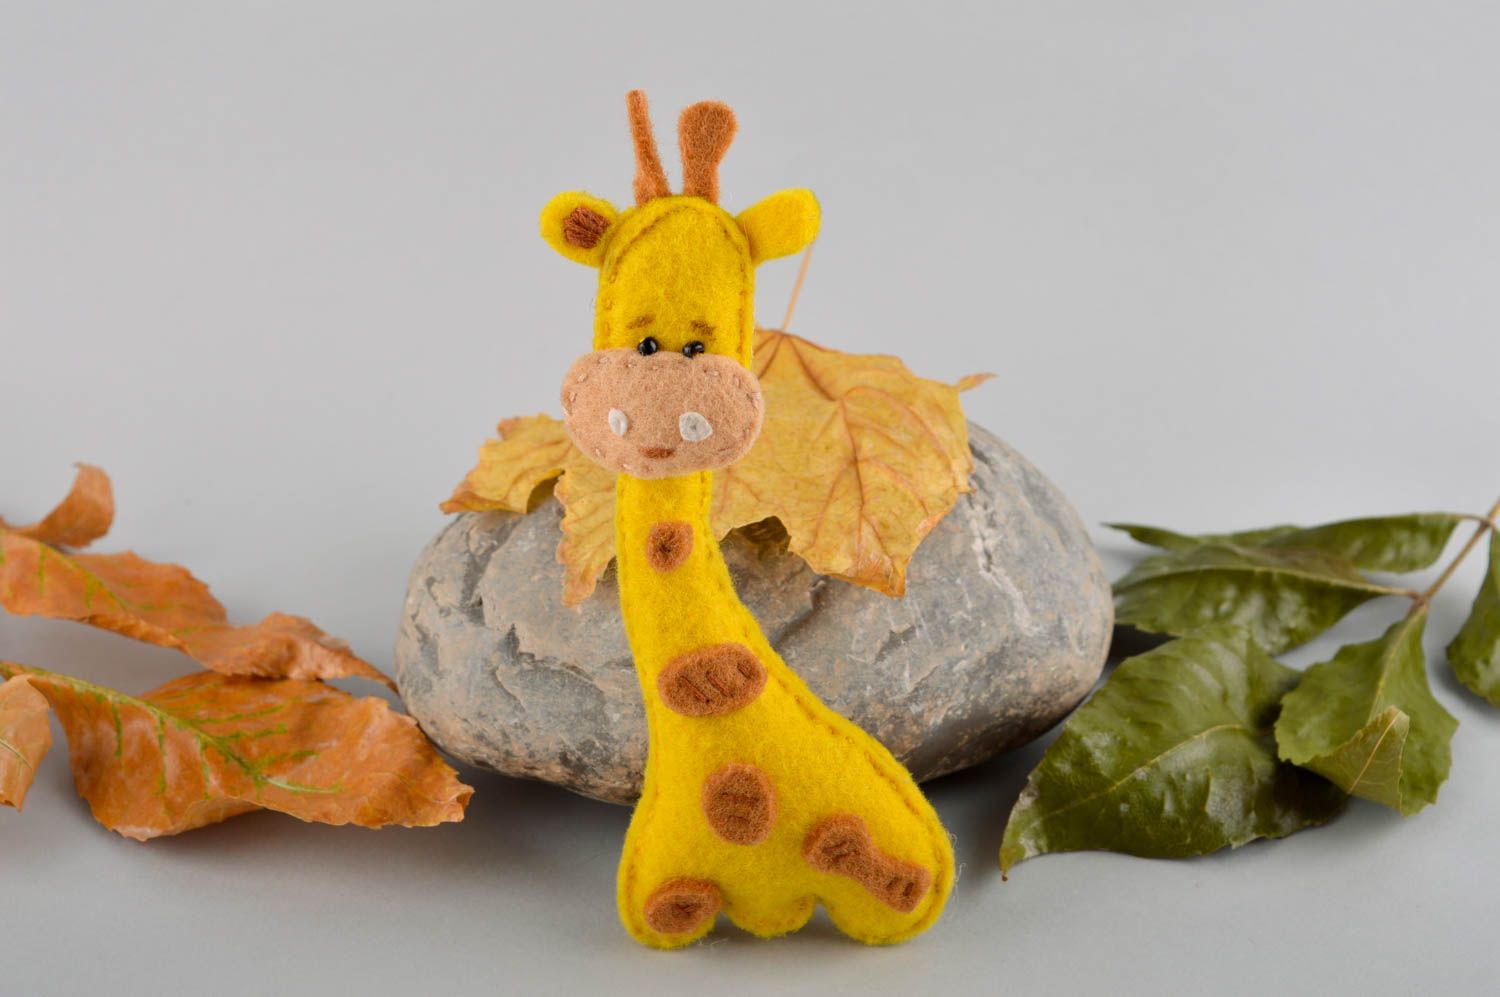 Handmade Filz Tier Giraffe Spielzeug Geschenk Idee aus Filzwolle gelb knuddelig foto 1